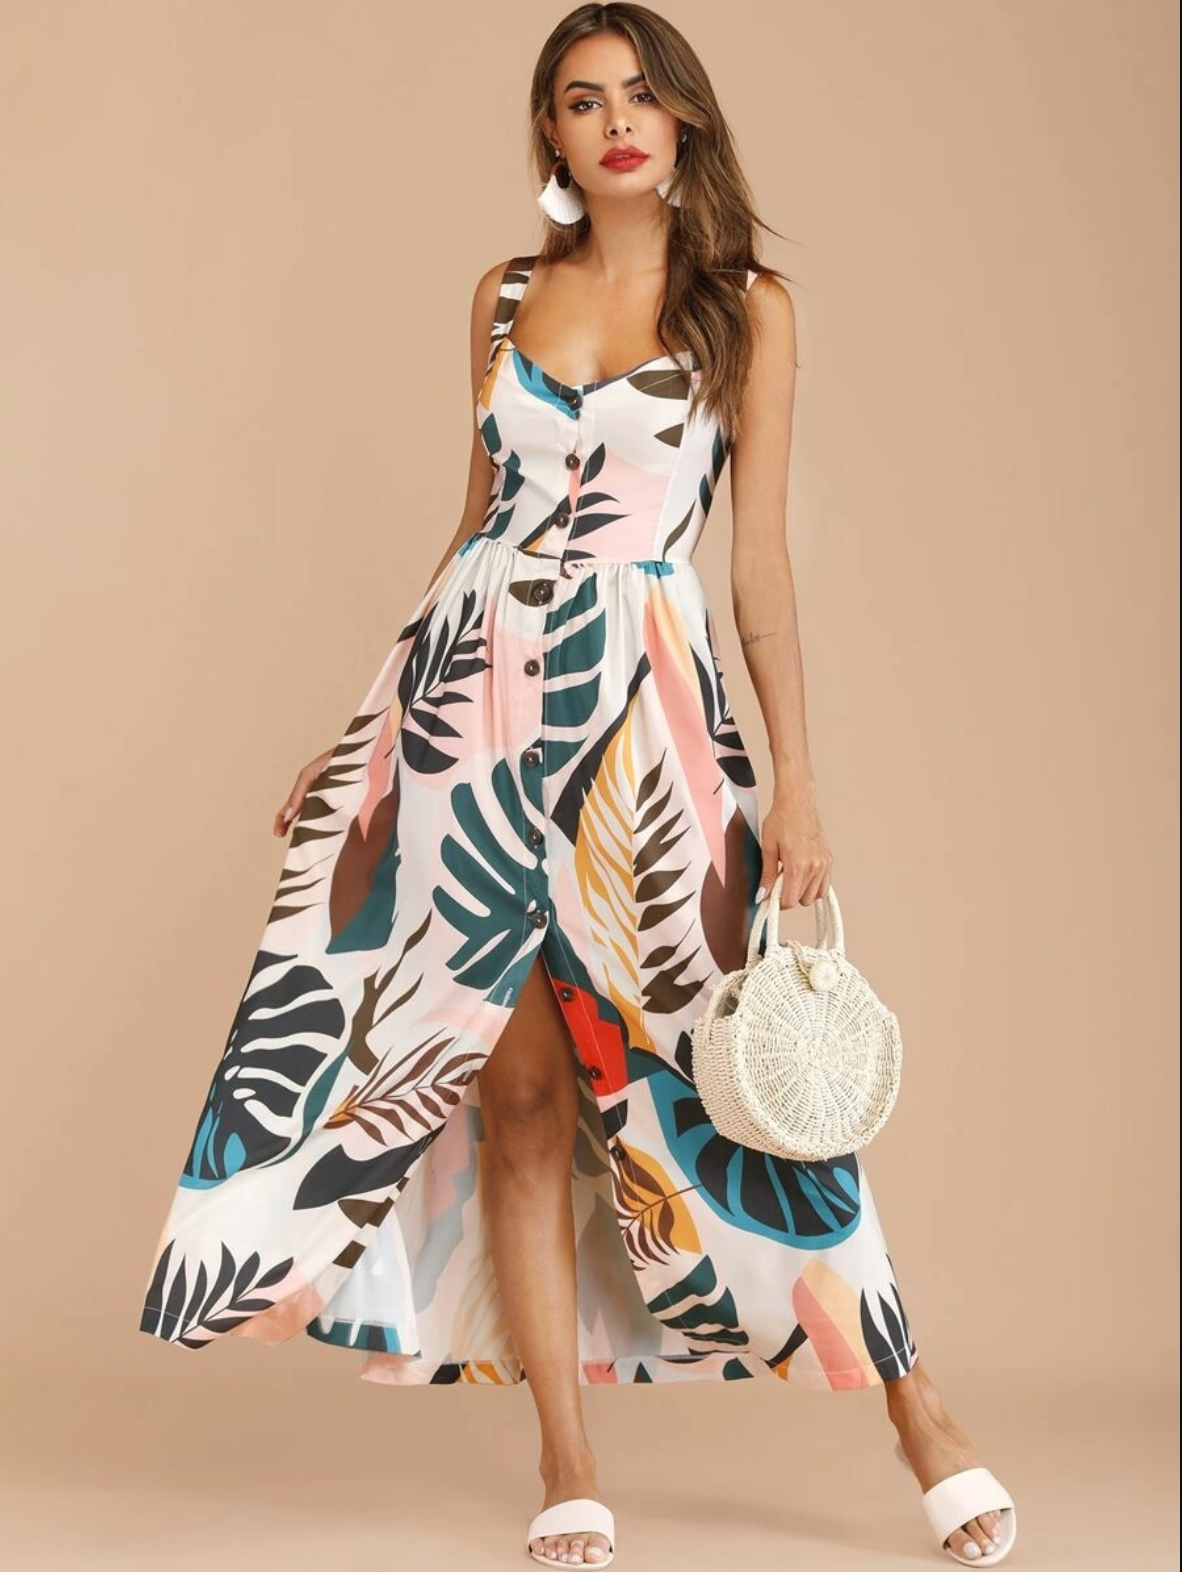 Buy Affordable Summer Dress Online - Bnsds Fashion World